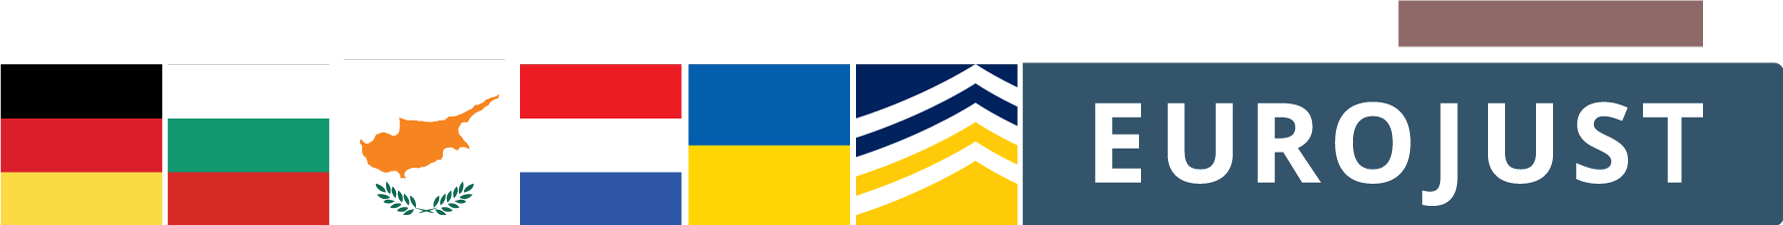 Flags of DE, BG, CY, NL, UA, logos of Europol, Eurojust